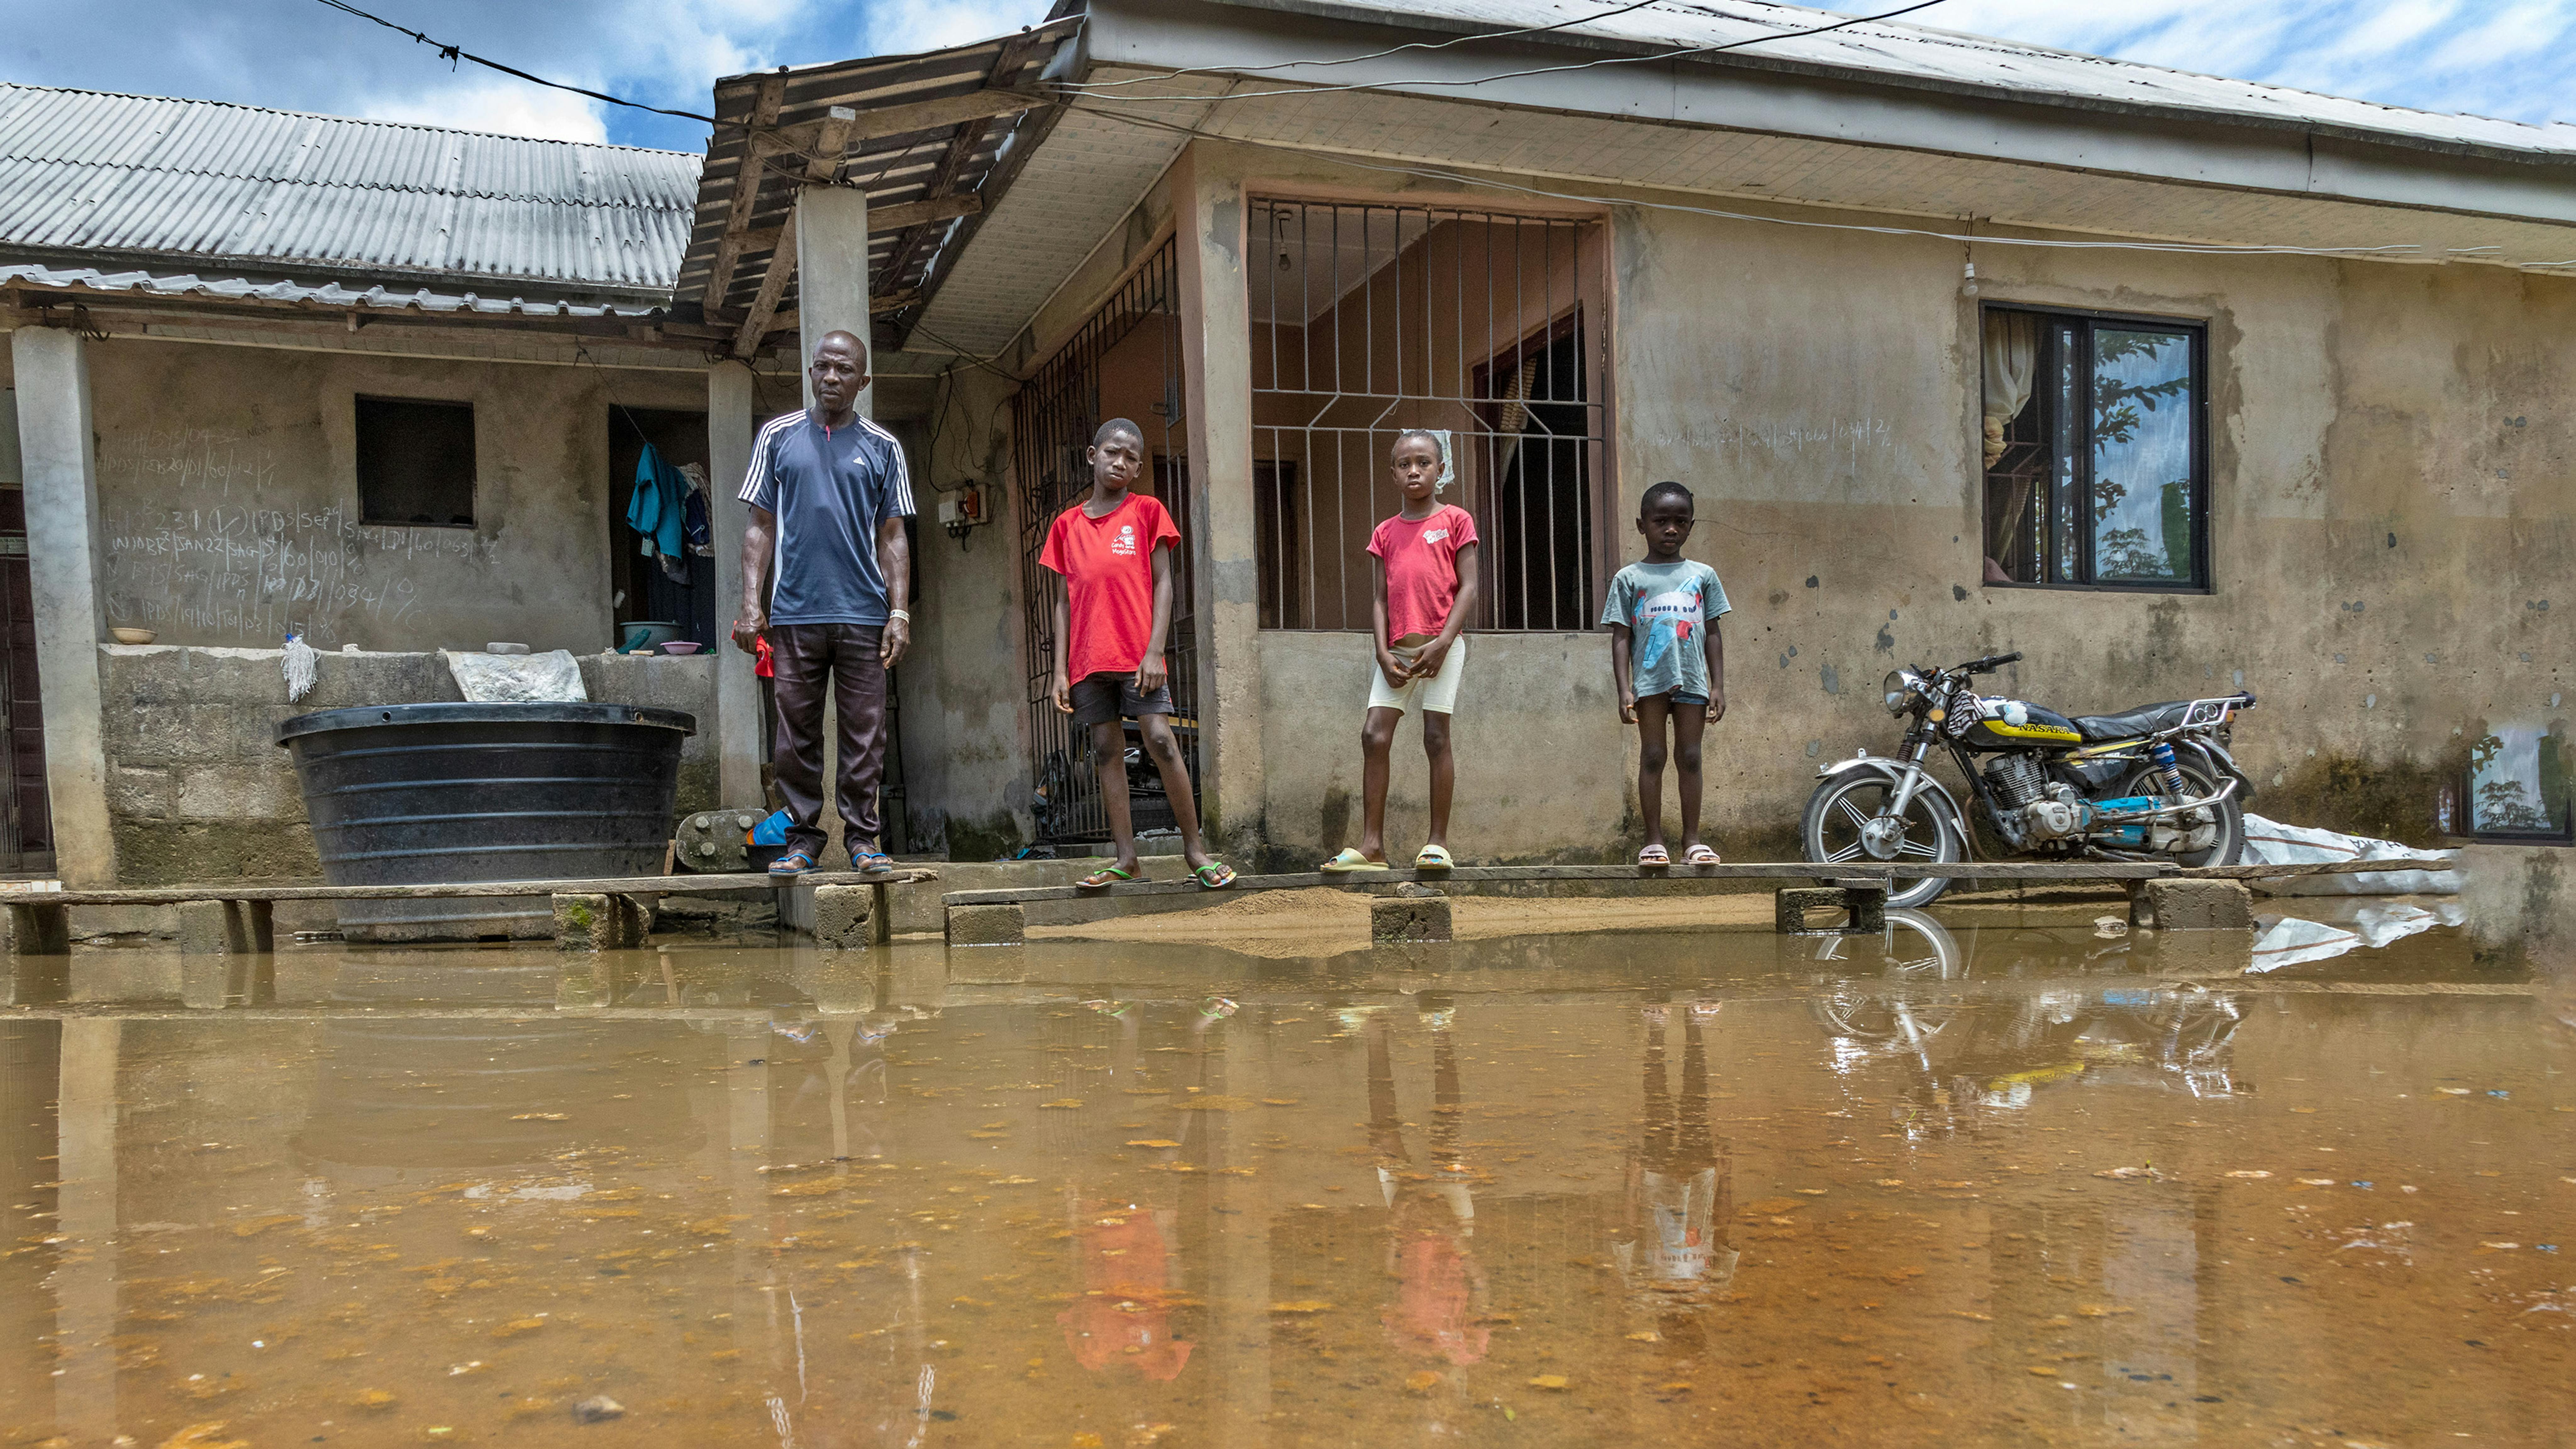 Nigeria - kpoebi Germany 45 anni, con i suoi figli Peretimifa Germany, Samuel Germany e Joy Germany sono in piedi sulla passerella di legno improvvisata davanti alla sua casa colpita dall'alluvione a Sagbama,